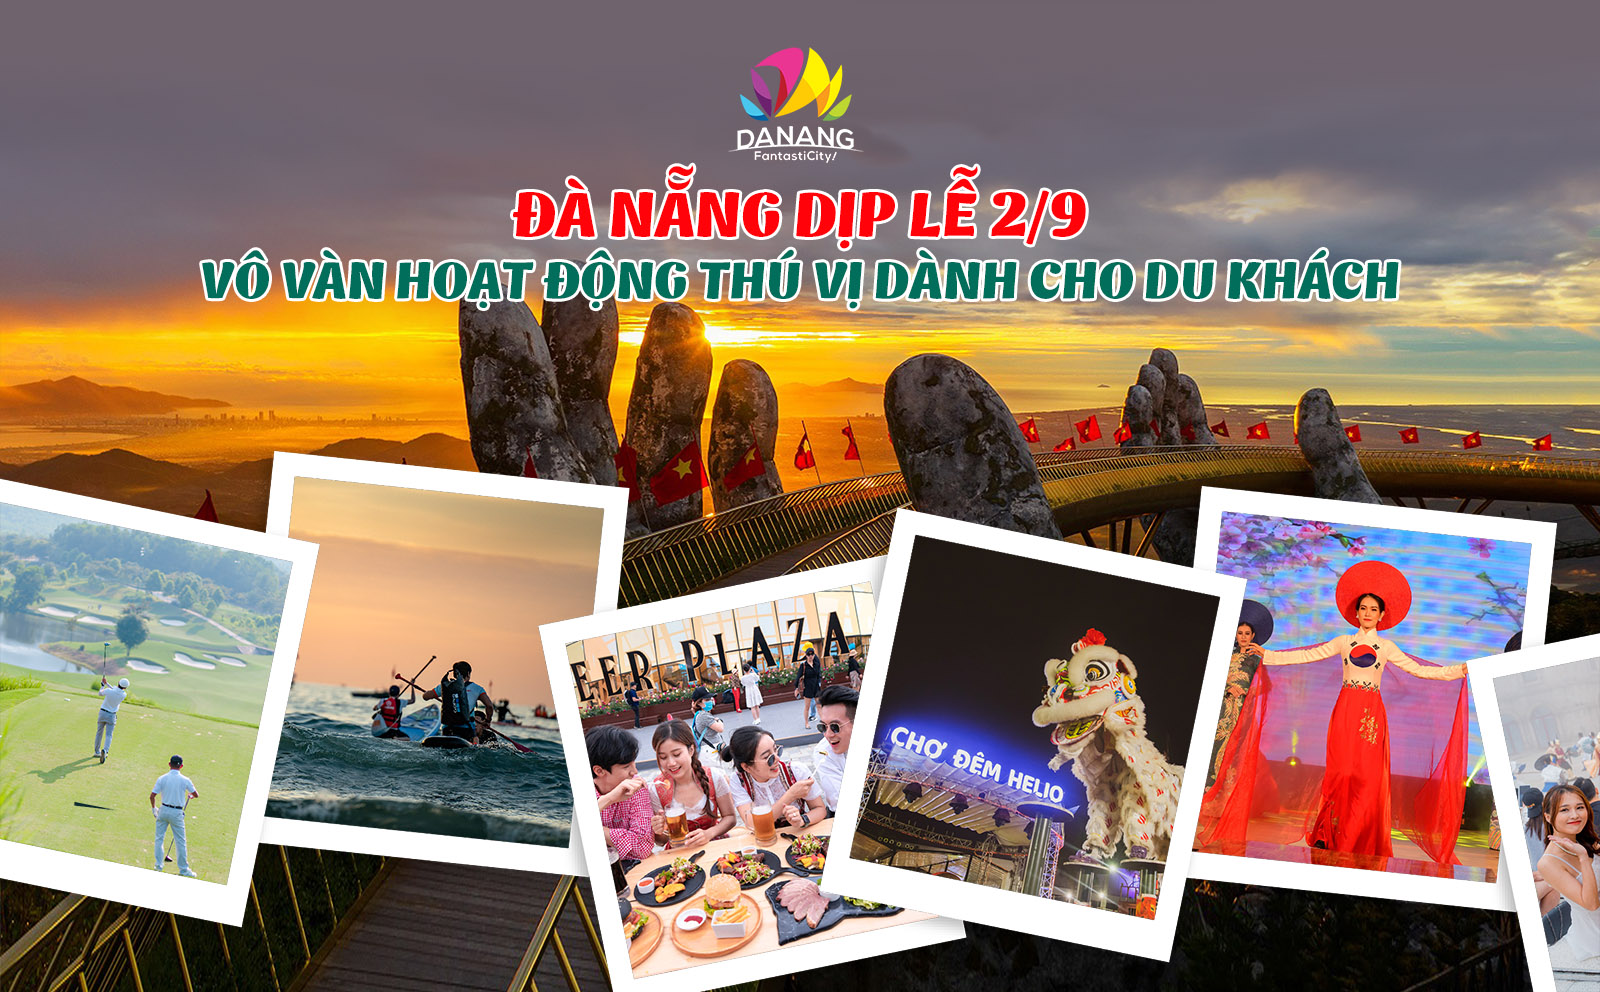 Đà Nẵng dịp lễ 2/9 – Vȏ Vàn hoạt động thú vị dành cho du khách - Cổng thȏng tin du lịch thành phố Đà Nẵng